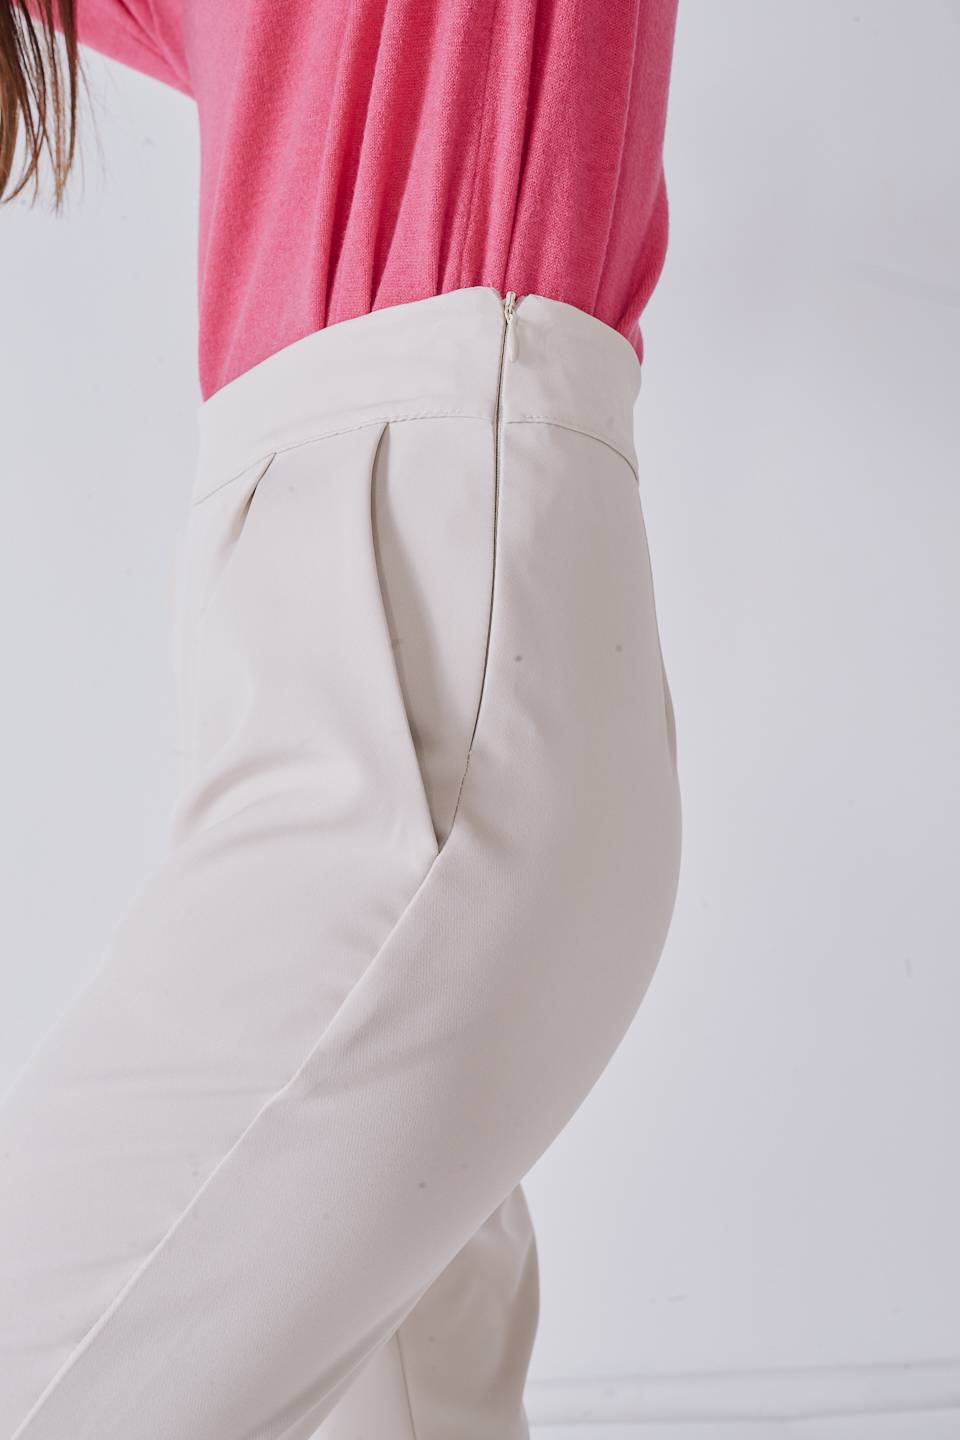 Pantalone cicca crema - Autunno - Inverno 2022 | Brend